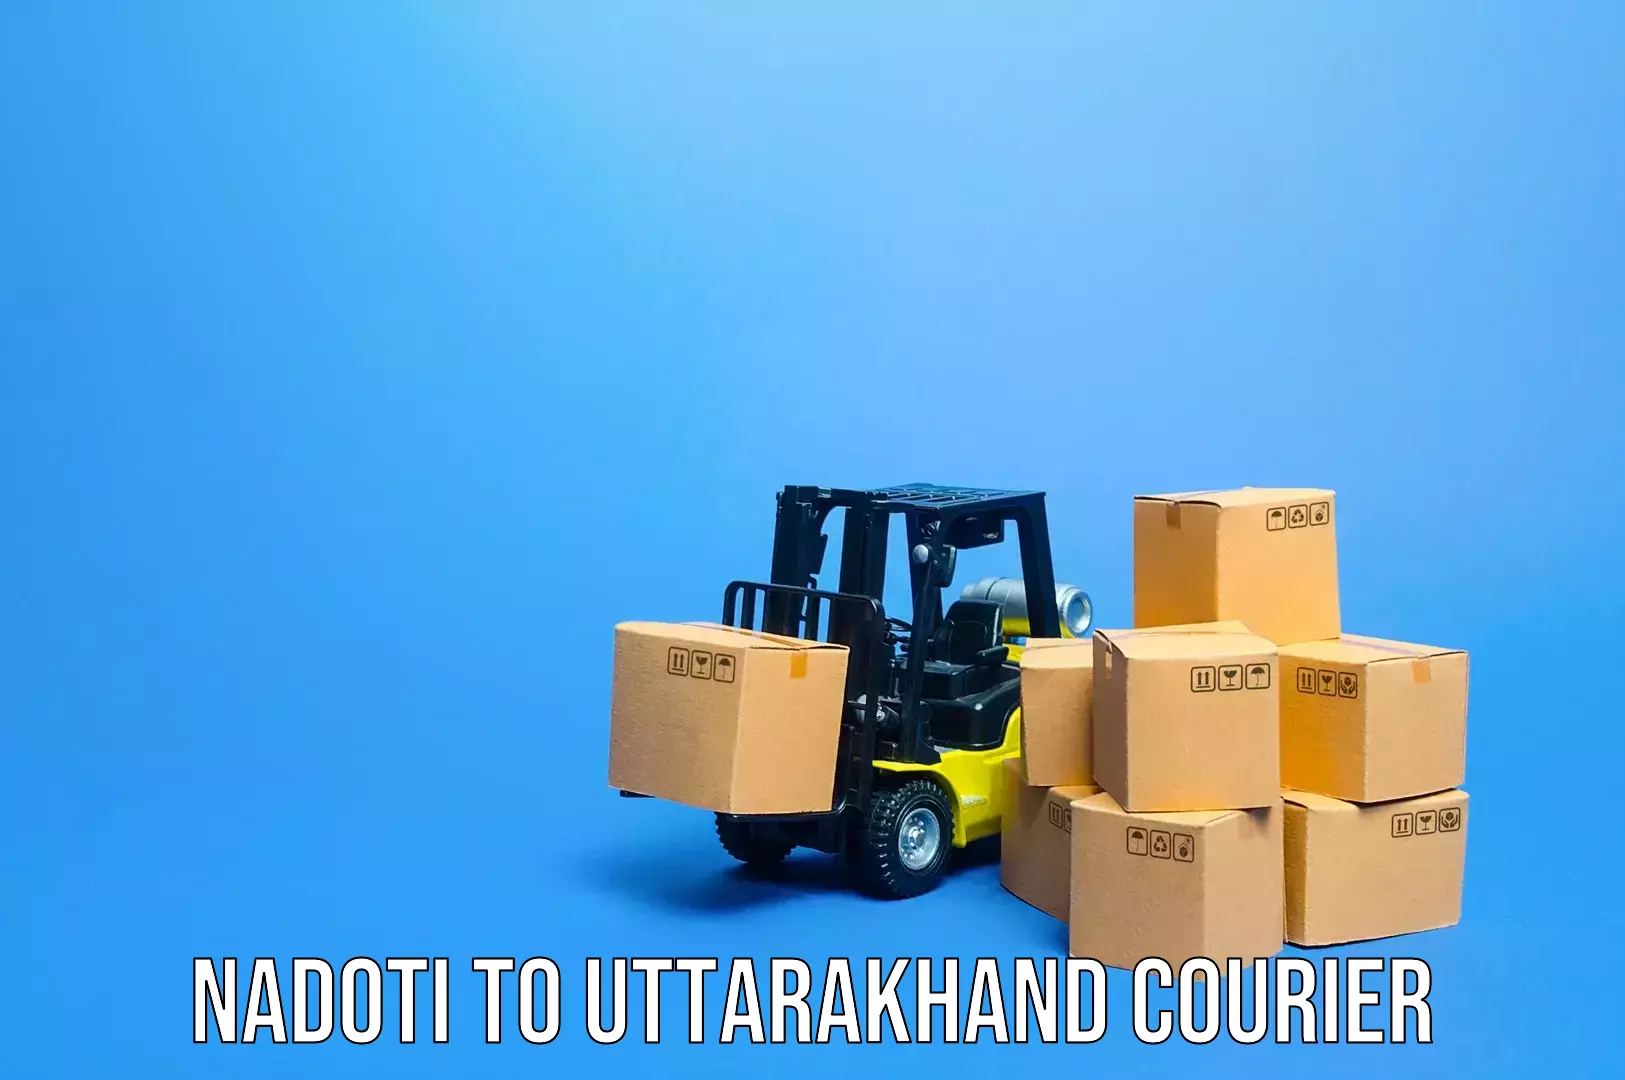 Luggage transport logistics Nadoti to Uttarakhand